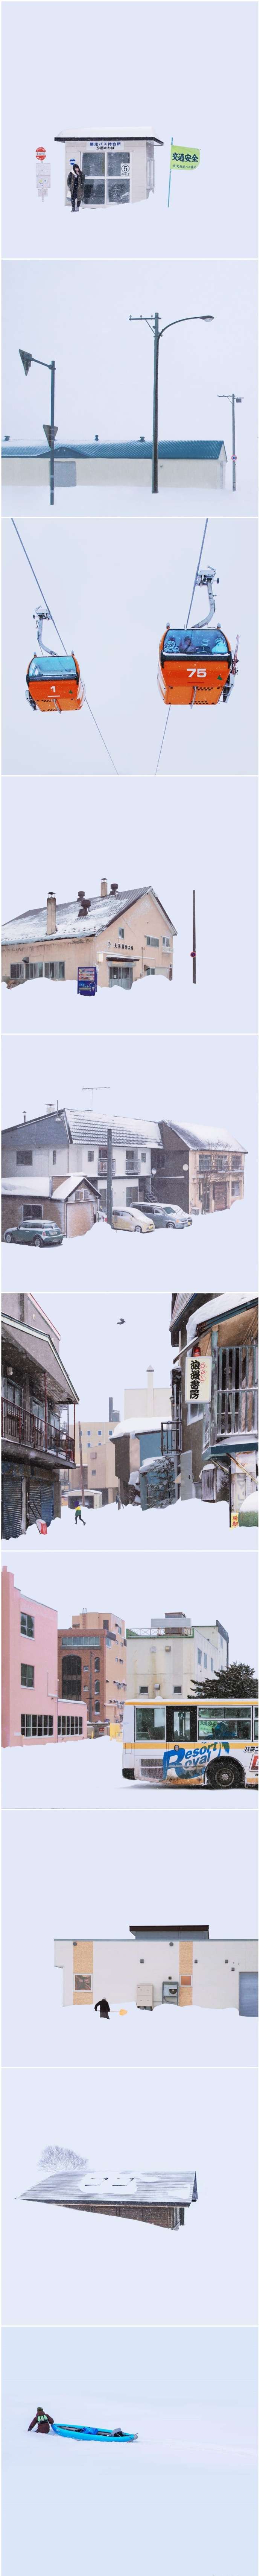 北海道暴雪後「一片白茫茫」　攝影師拍下「超現實影像」讓世界各地網友狂讚嘆